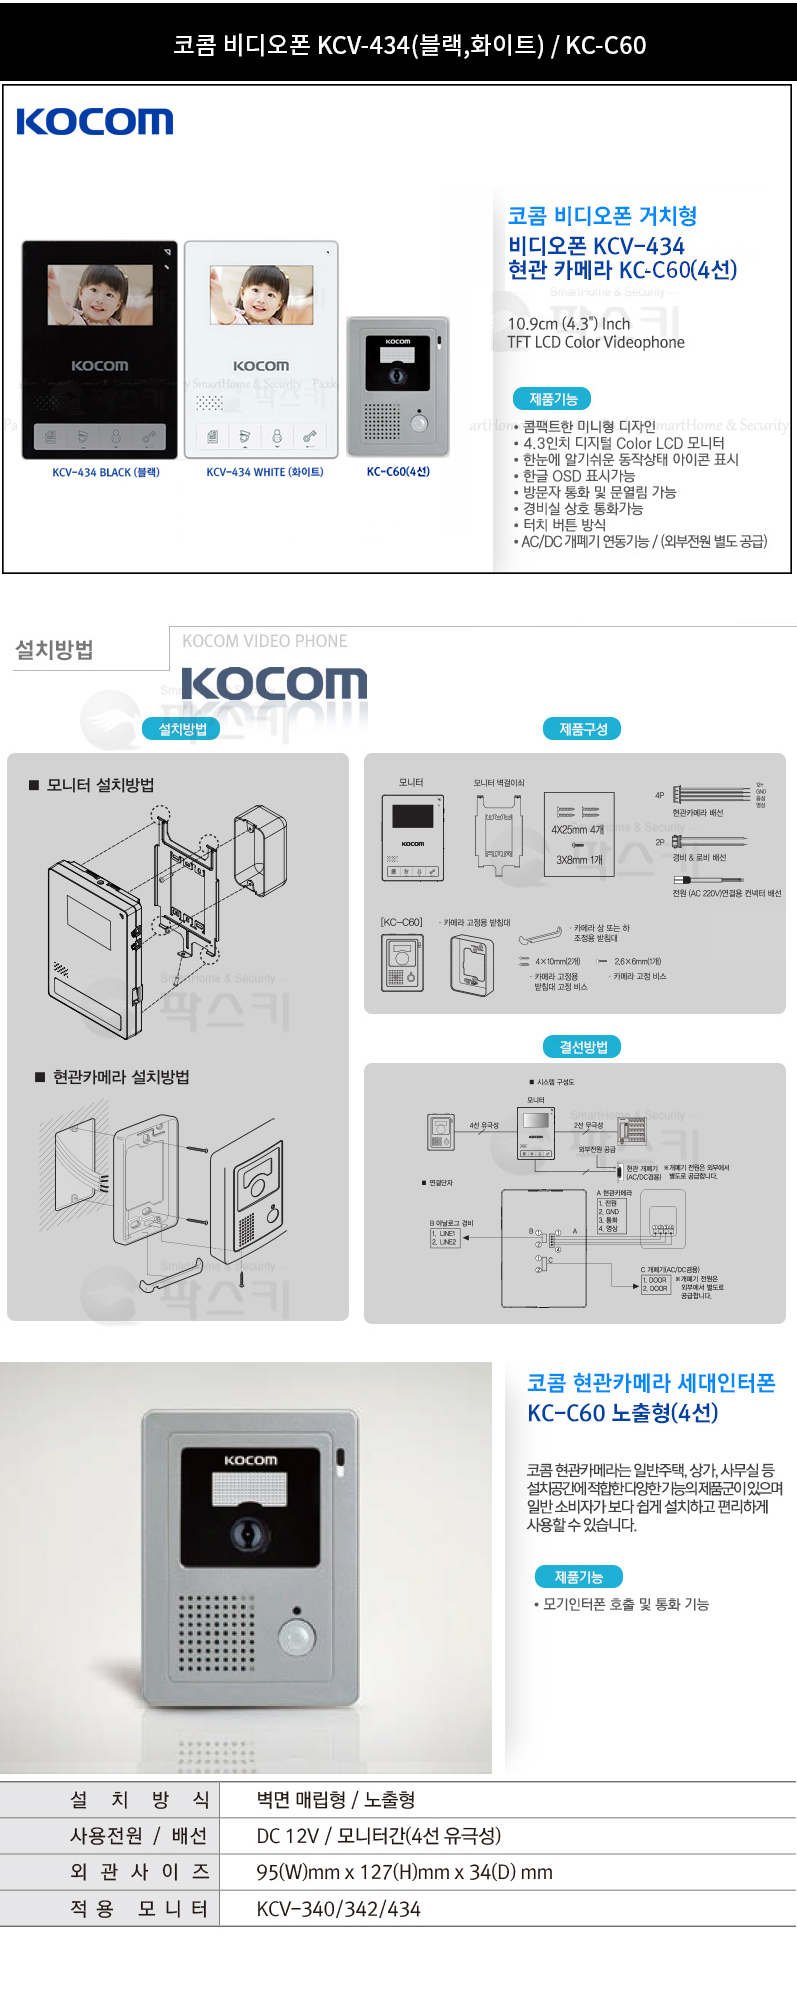 kocom_kcv-434_kc-c60cam_detail_153958.jpg